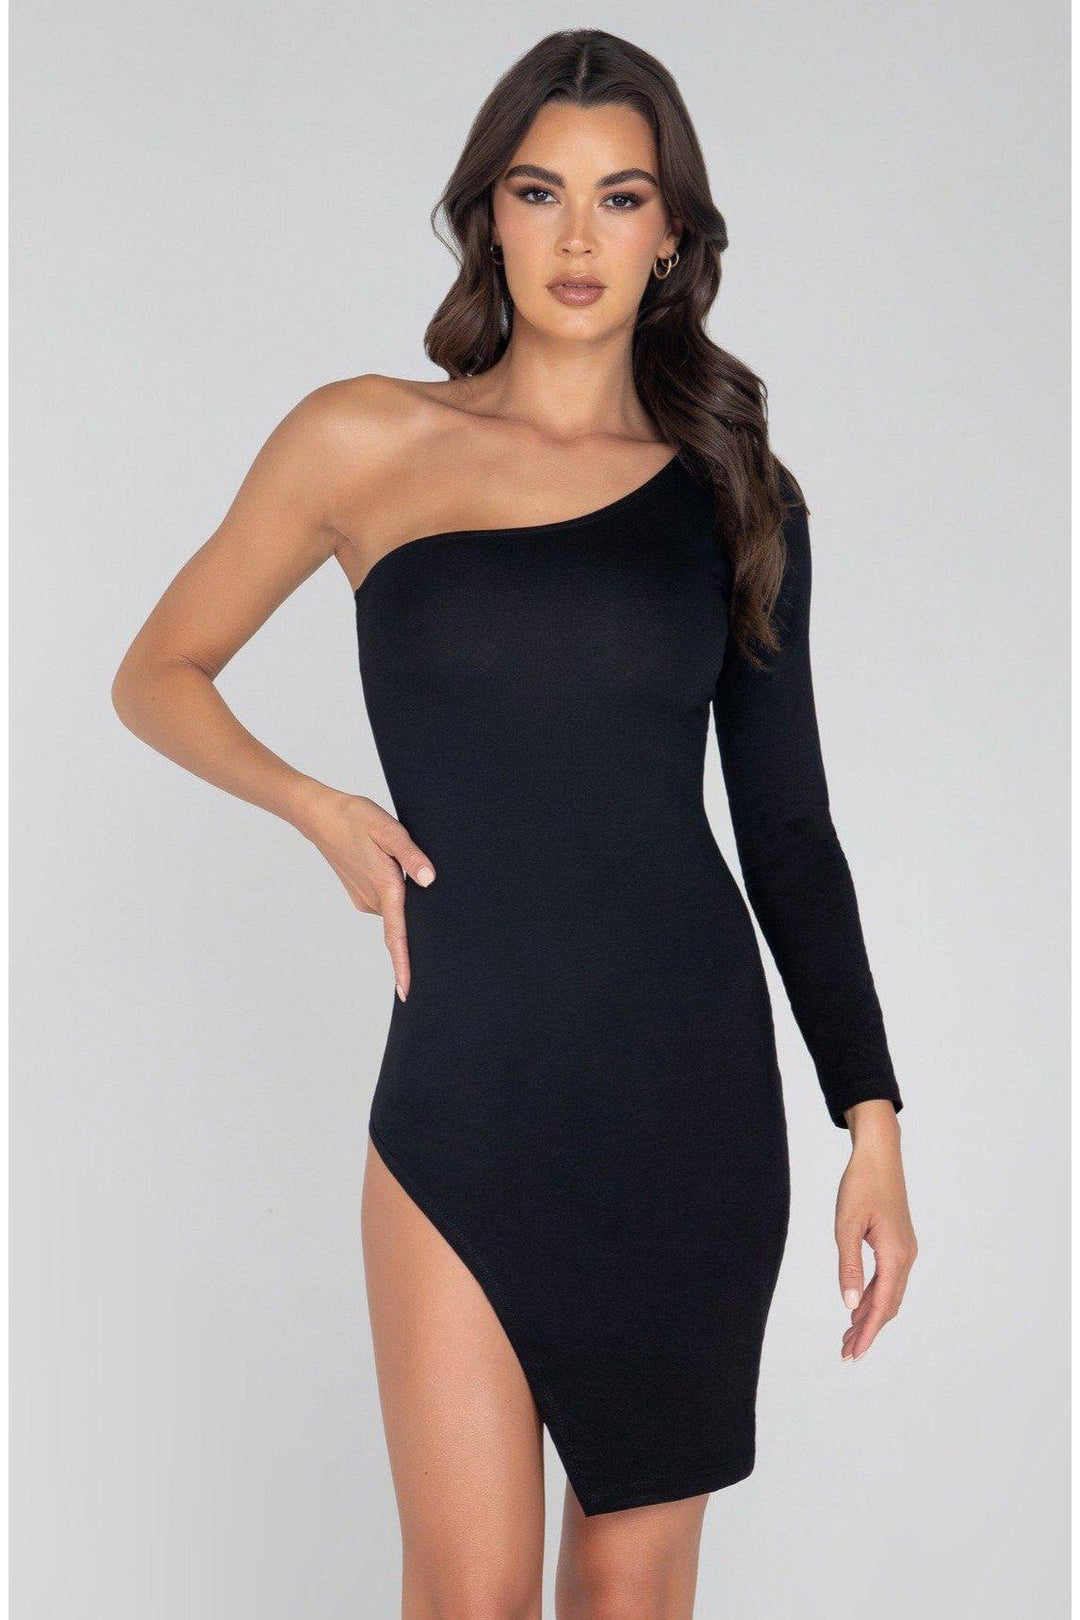 Single Shoulder Split Bodycon Dress-Club Dresses-Roma Confidential-Black-L-SEXYSHOES.COM